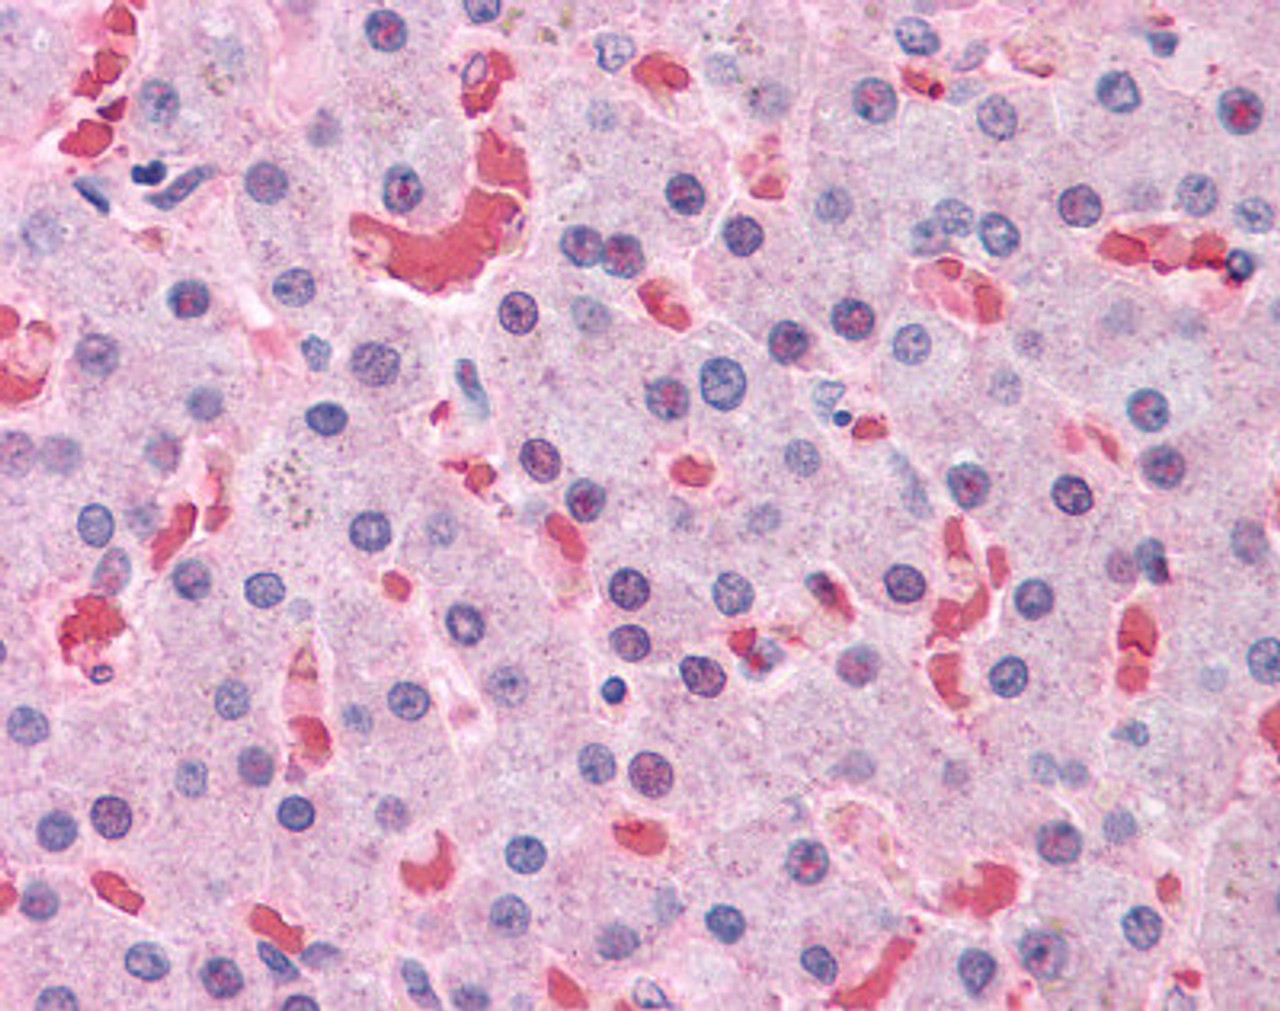 Immunohistochemistry of human liver tissue stained using HBB Monoclonal Antibody.